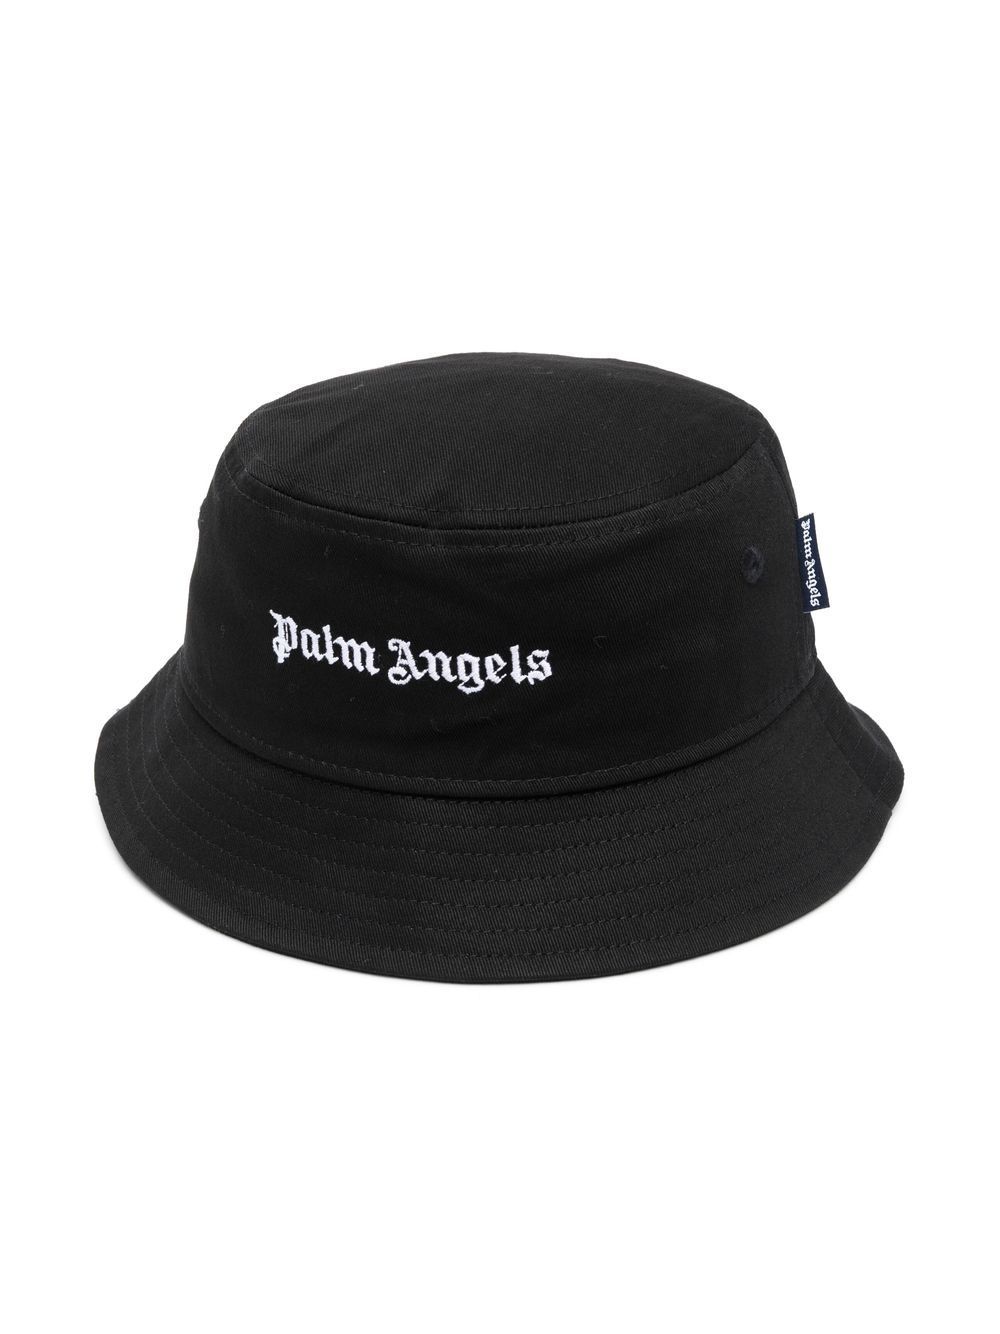 Palm Angels Kids logo-appliqu� bucket hat - Black von Palm Angels Kids